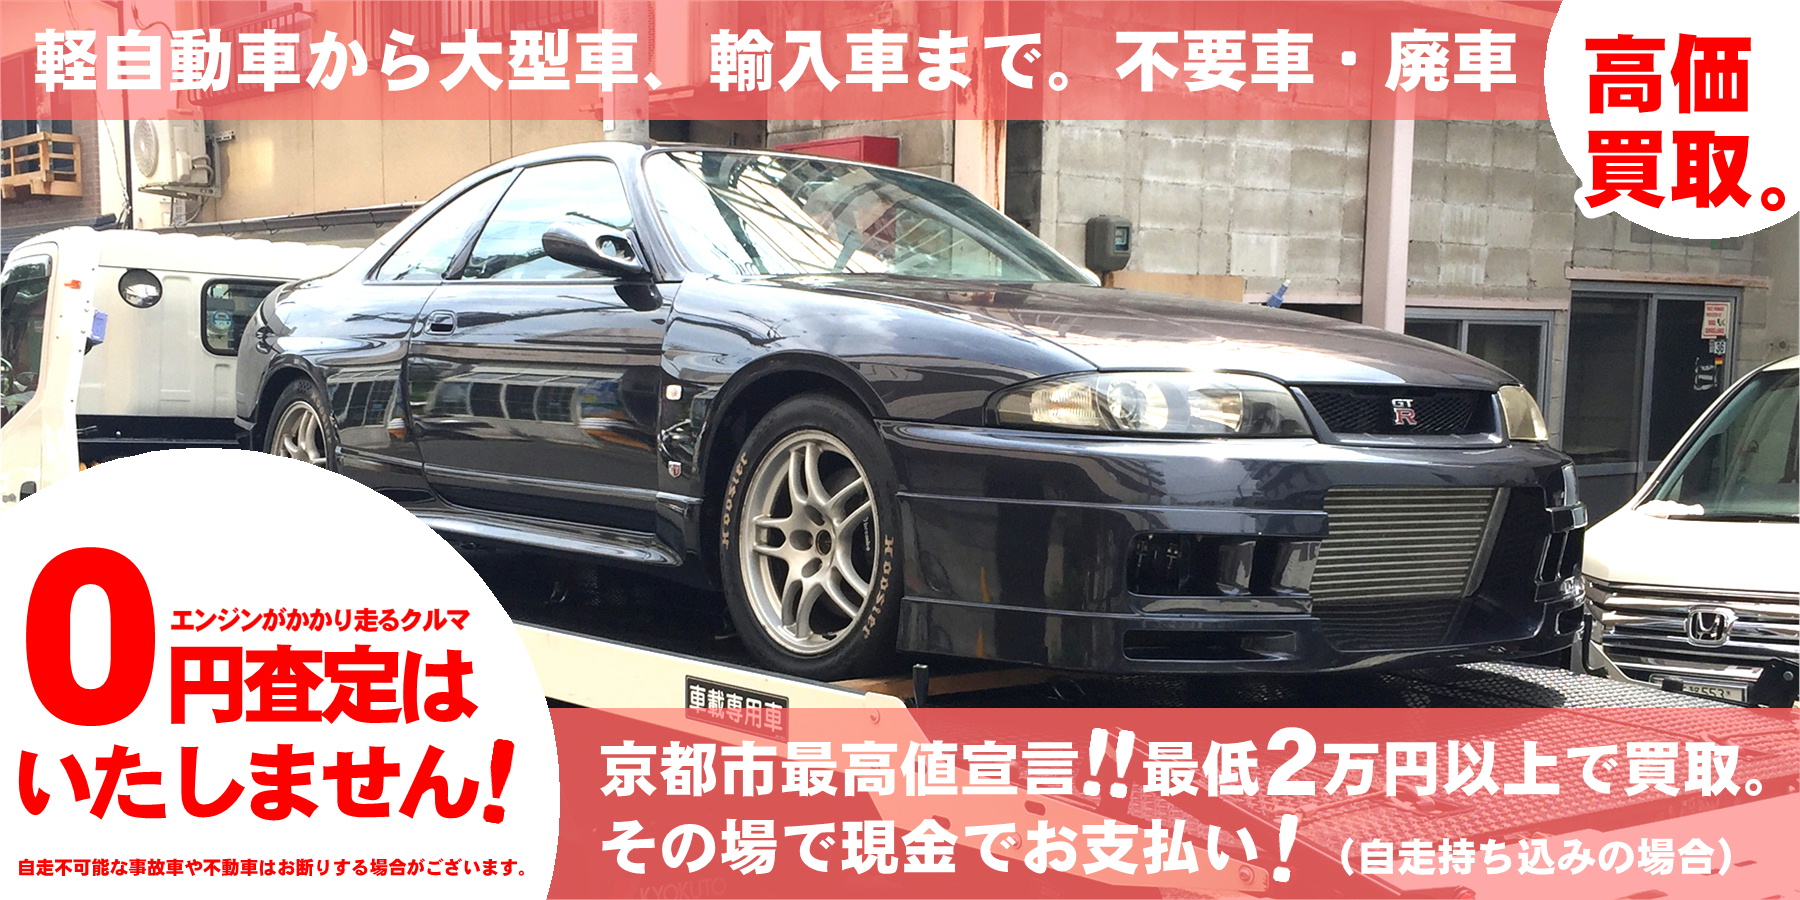 京都の廃車買取専門店 ホリック 軽自動車でも2万円以上の買取保証